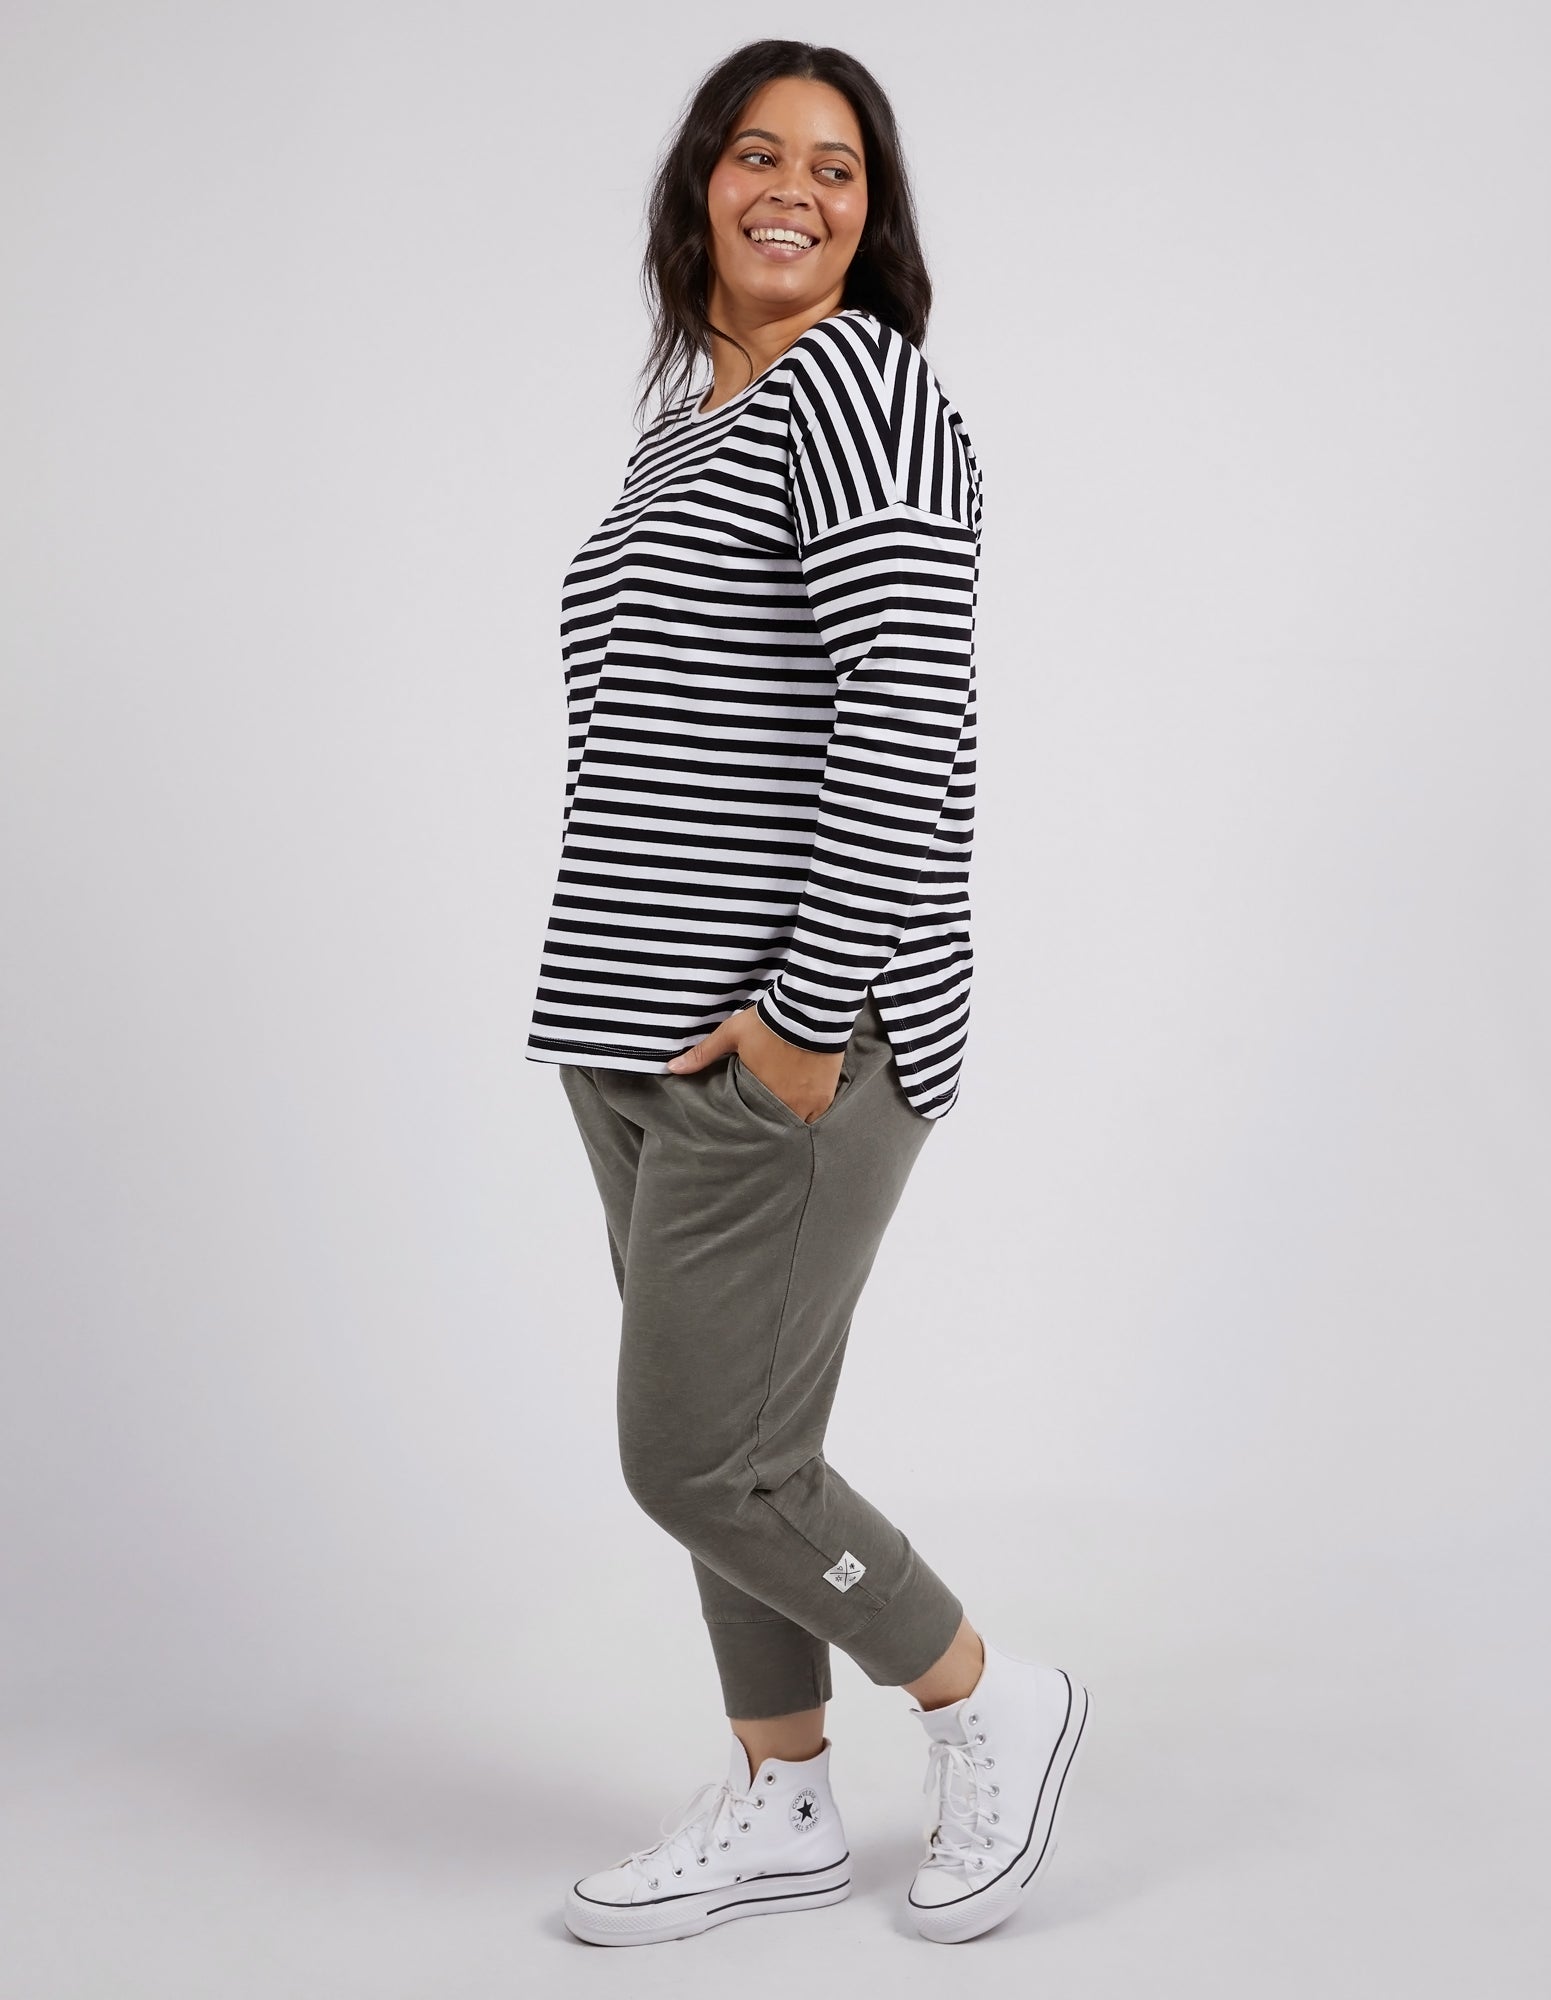 Lauren Long Sleeve Black & White Stripe